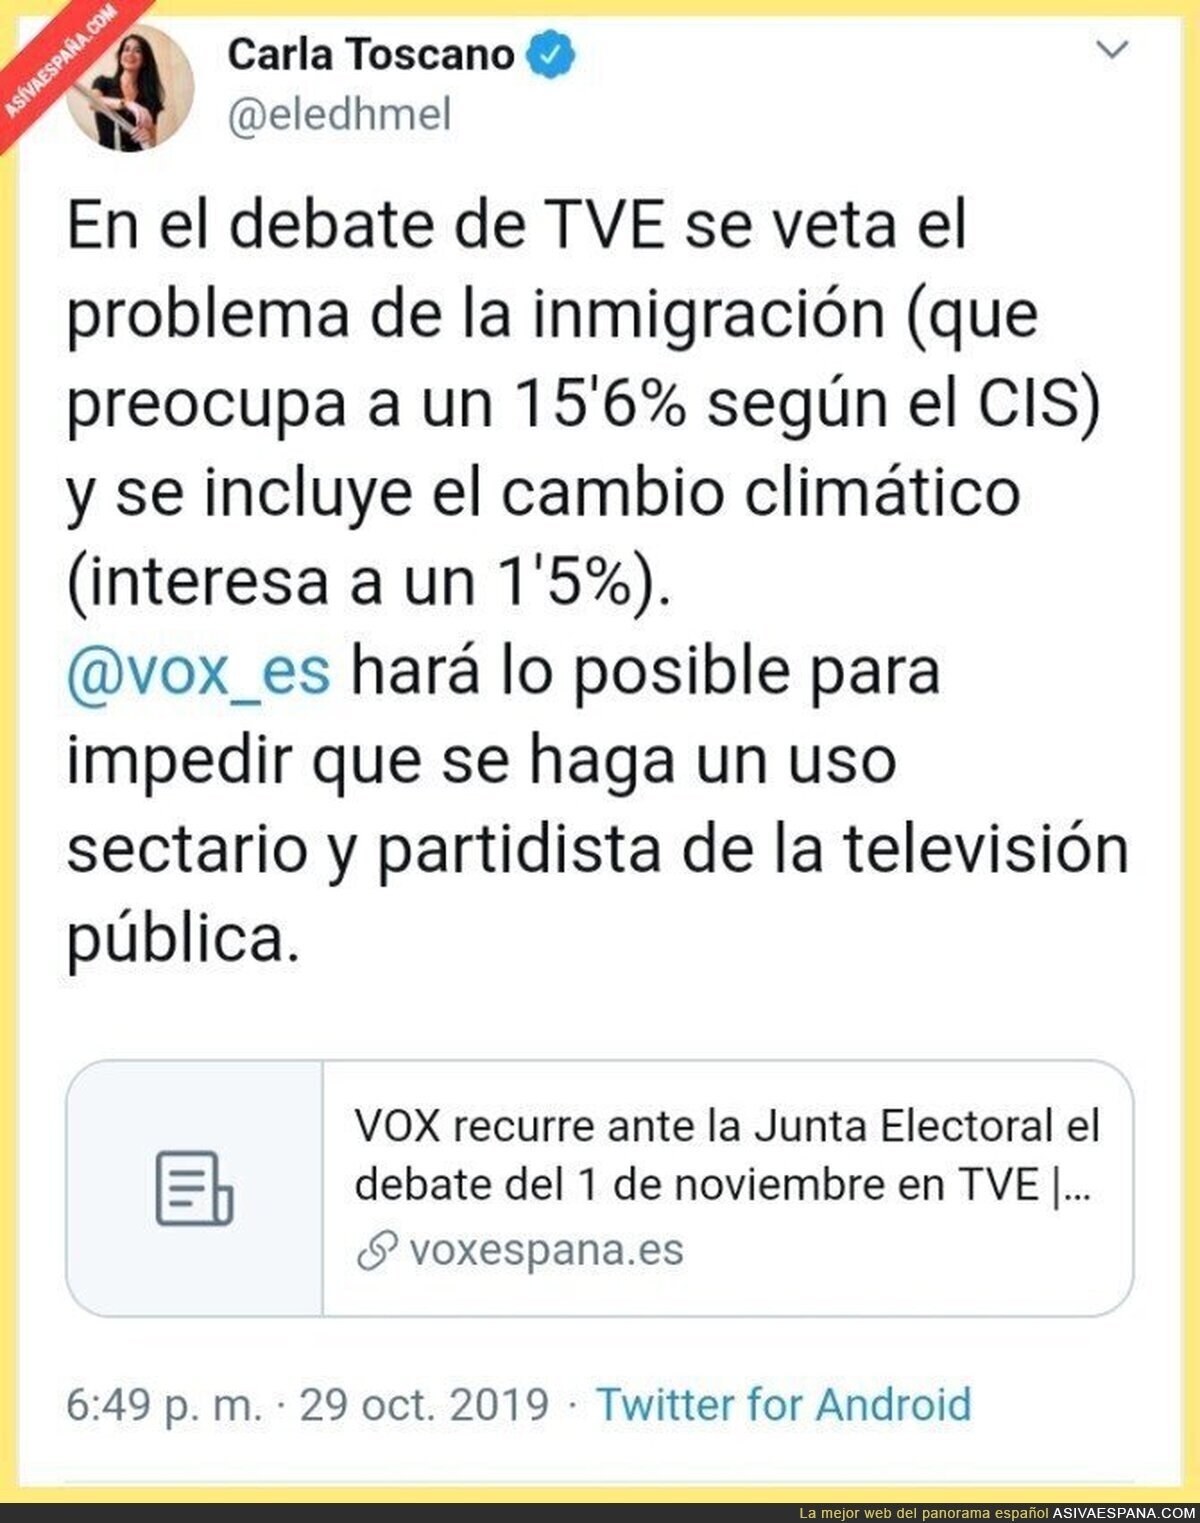 VOX recurre ante la Junta Electoral el debate del 1 de noviembre en TVE